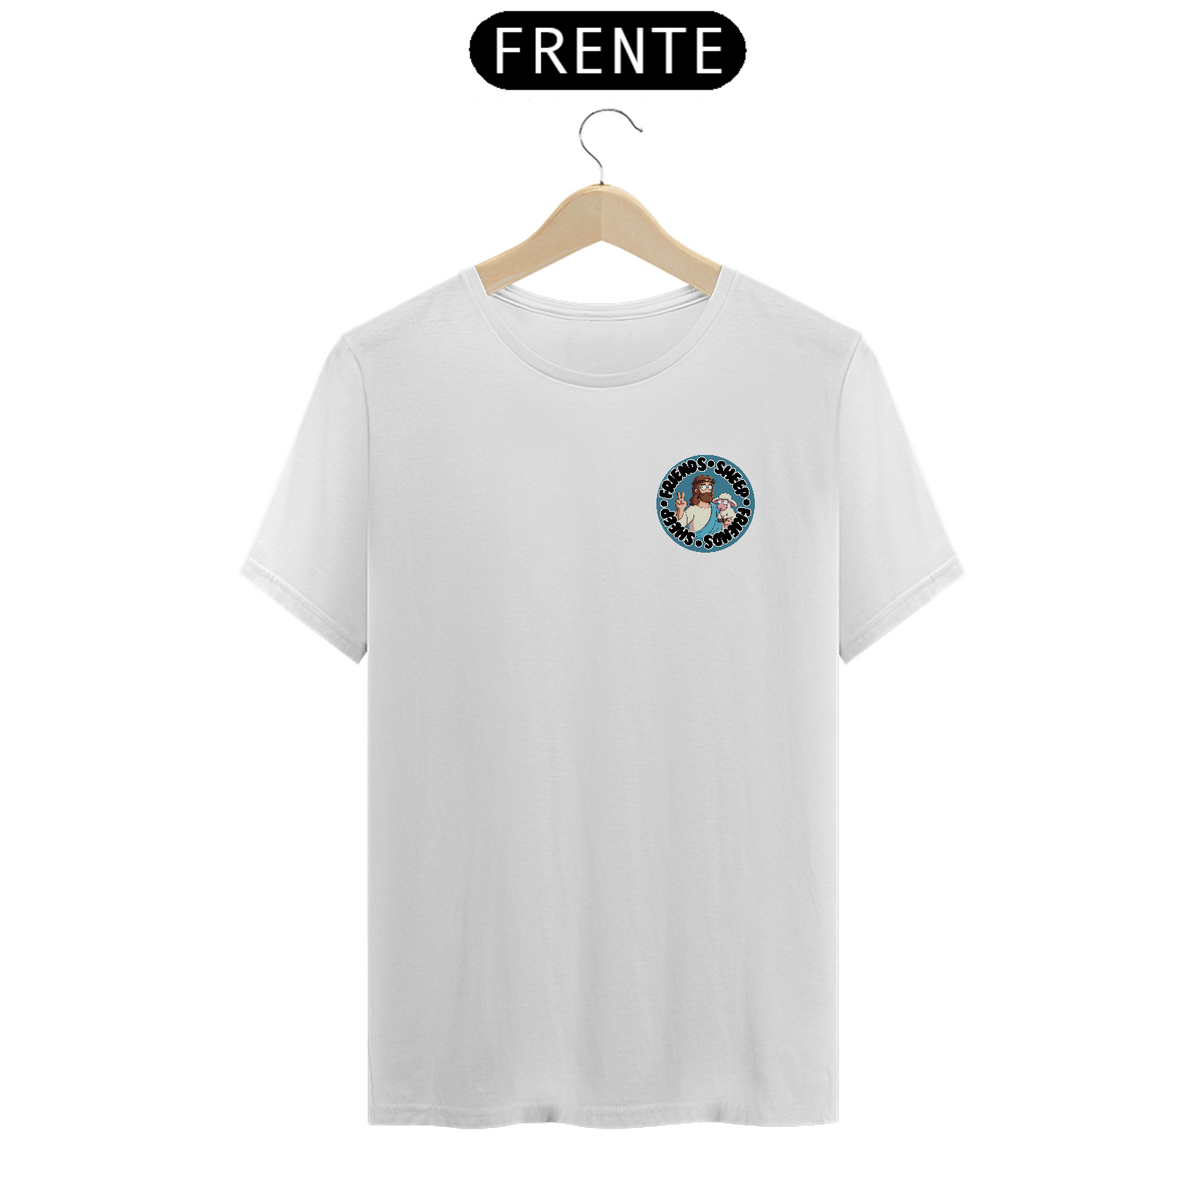 Nome do produto: Camiseta Friends Sheep